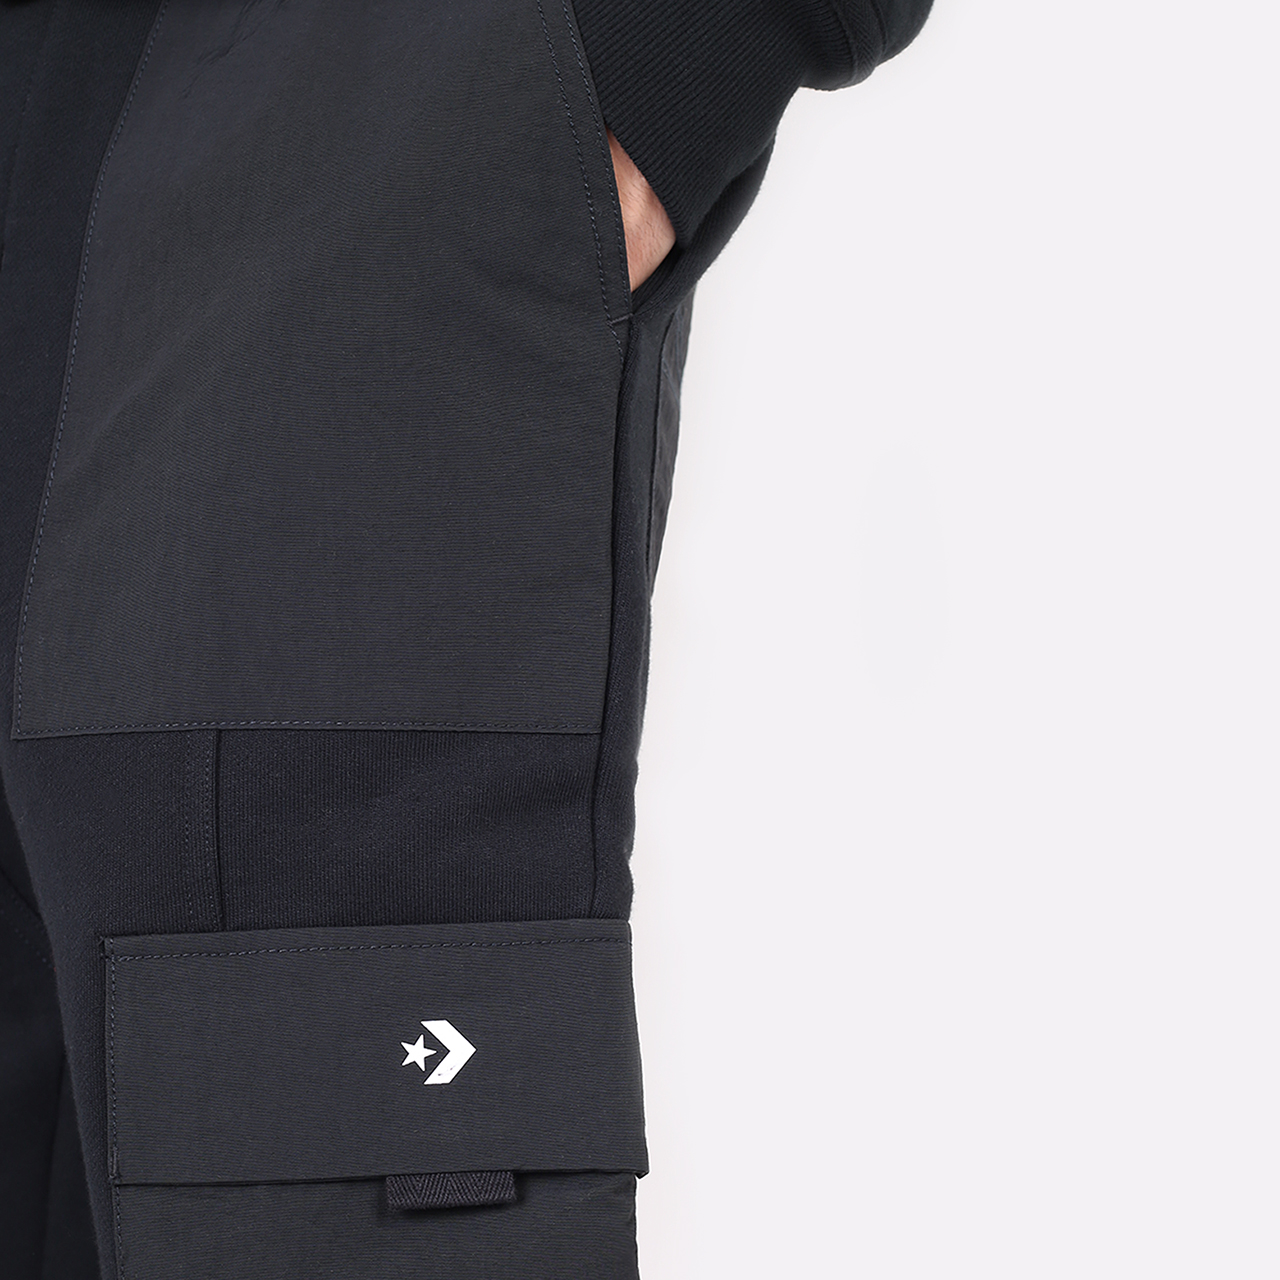 мужские черные брюки Converse Pant 10023692001 - цена, описание, фото 5